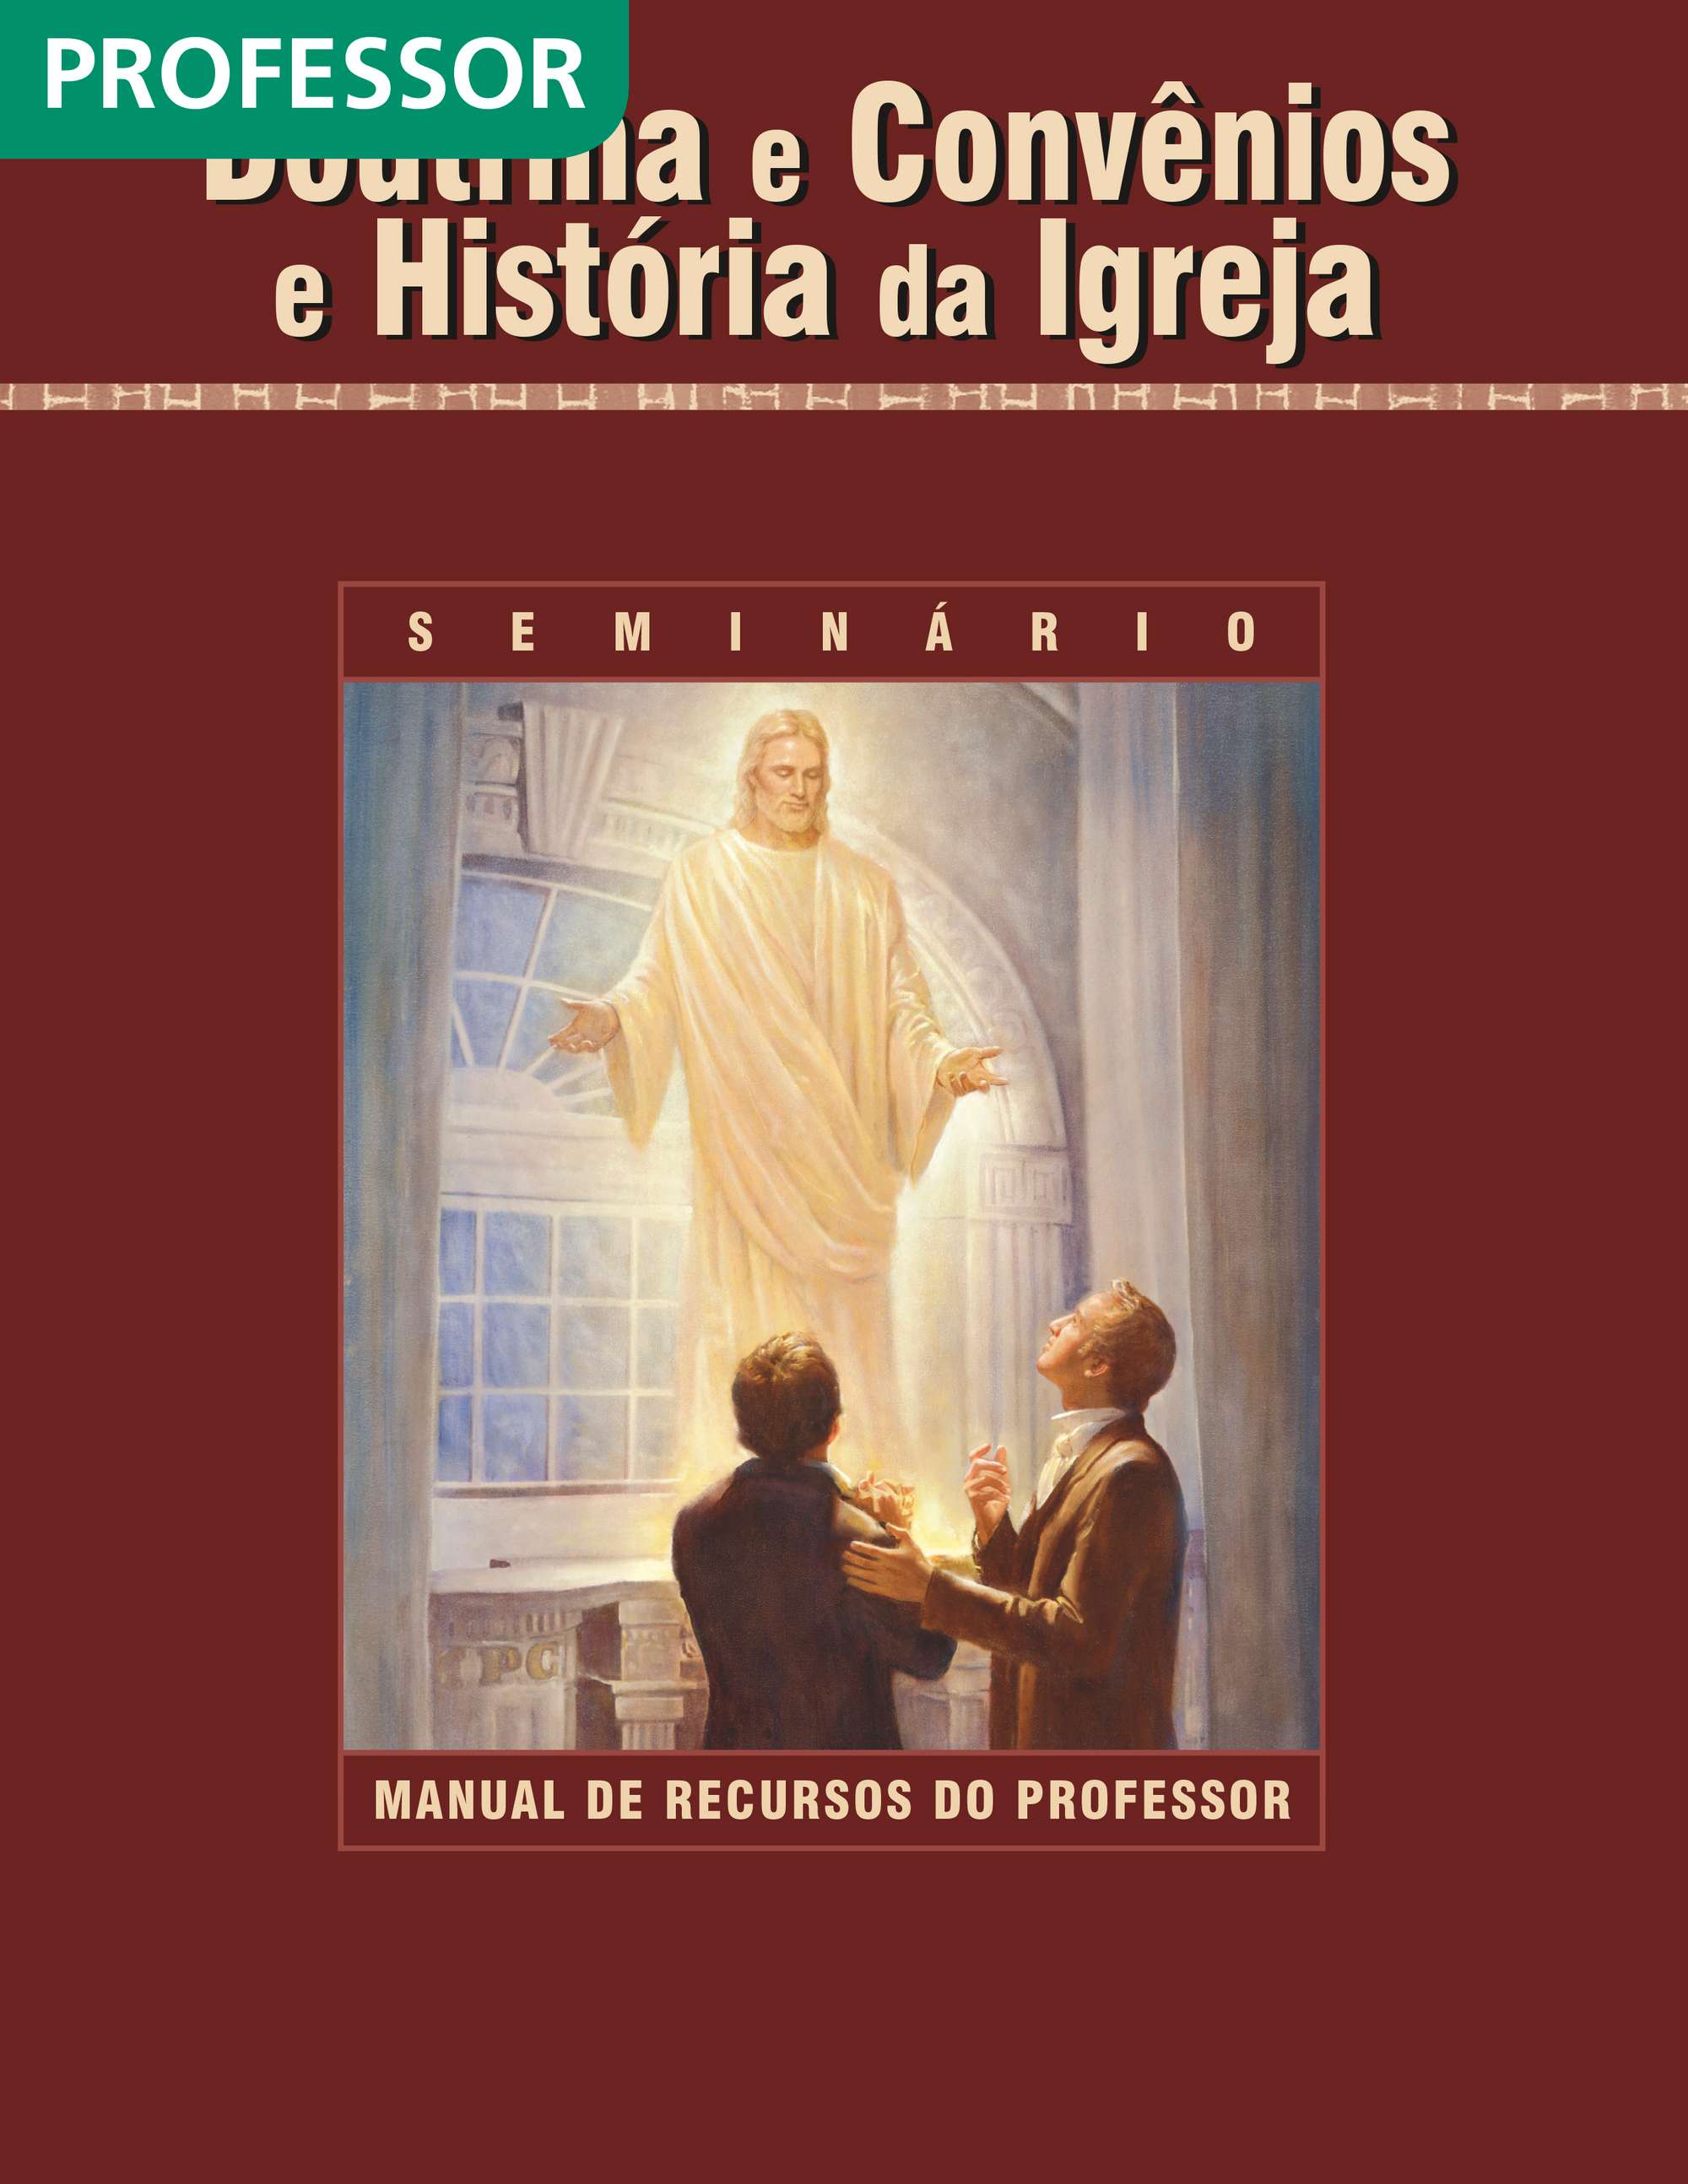 Doutrina e Convênios e História da Igreja — Manual de Recursos do Professor do Seminário